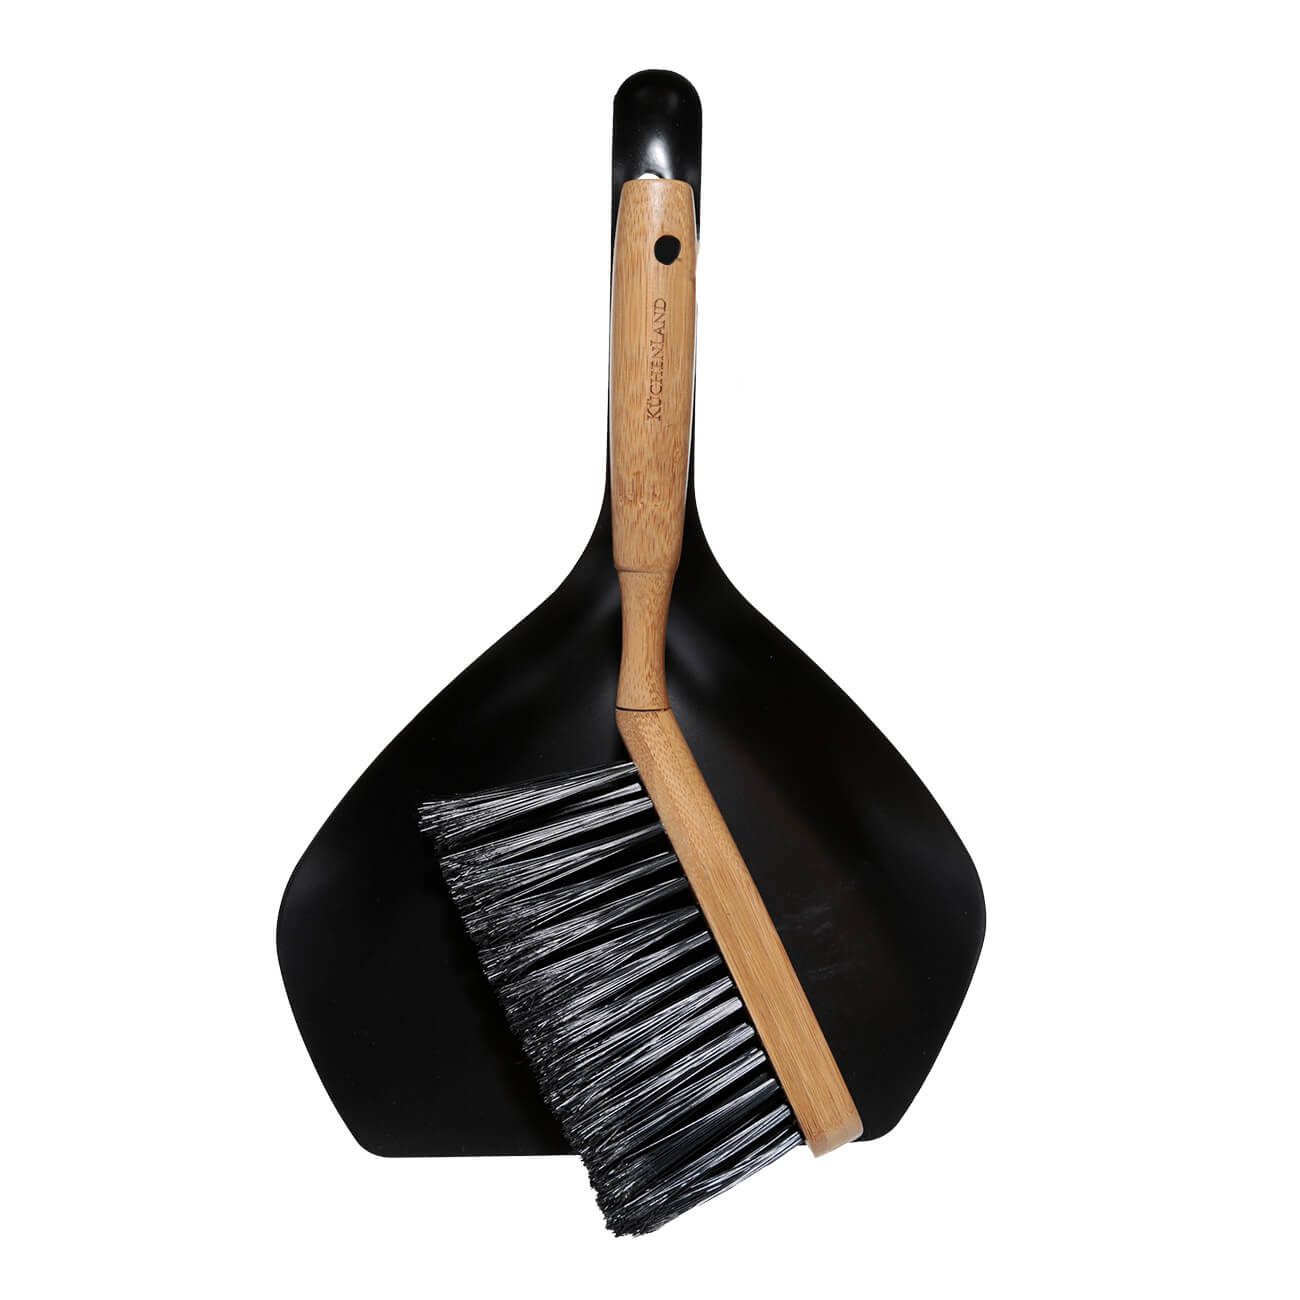 Щетка для мусора, с совком, 33 см, пластик/бамбук/сталь, черная, Black clean щетка зубная бамбук белая щетина eco life